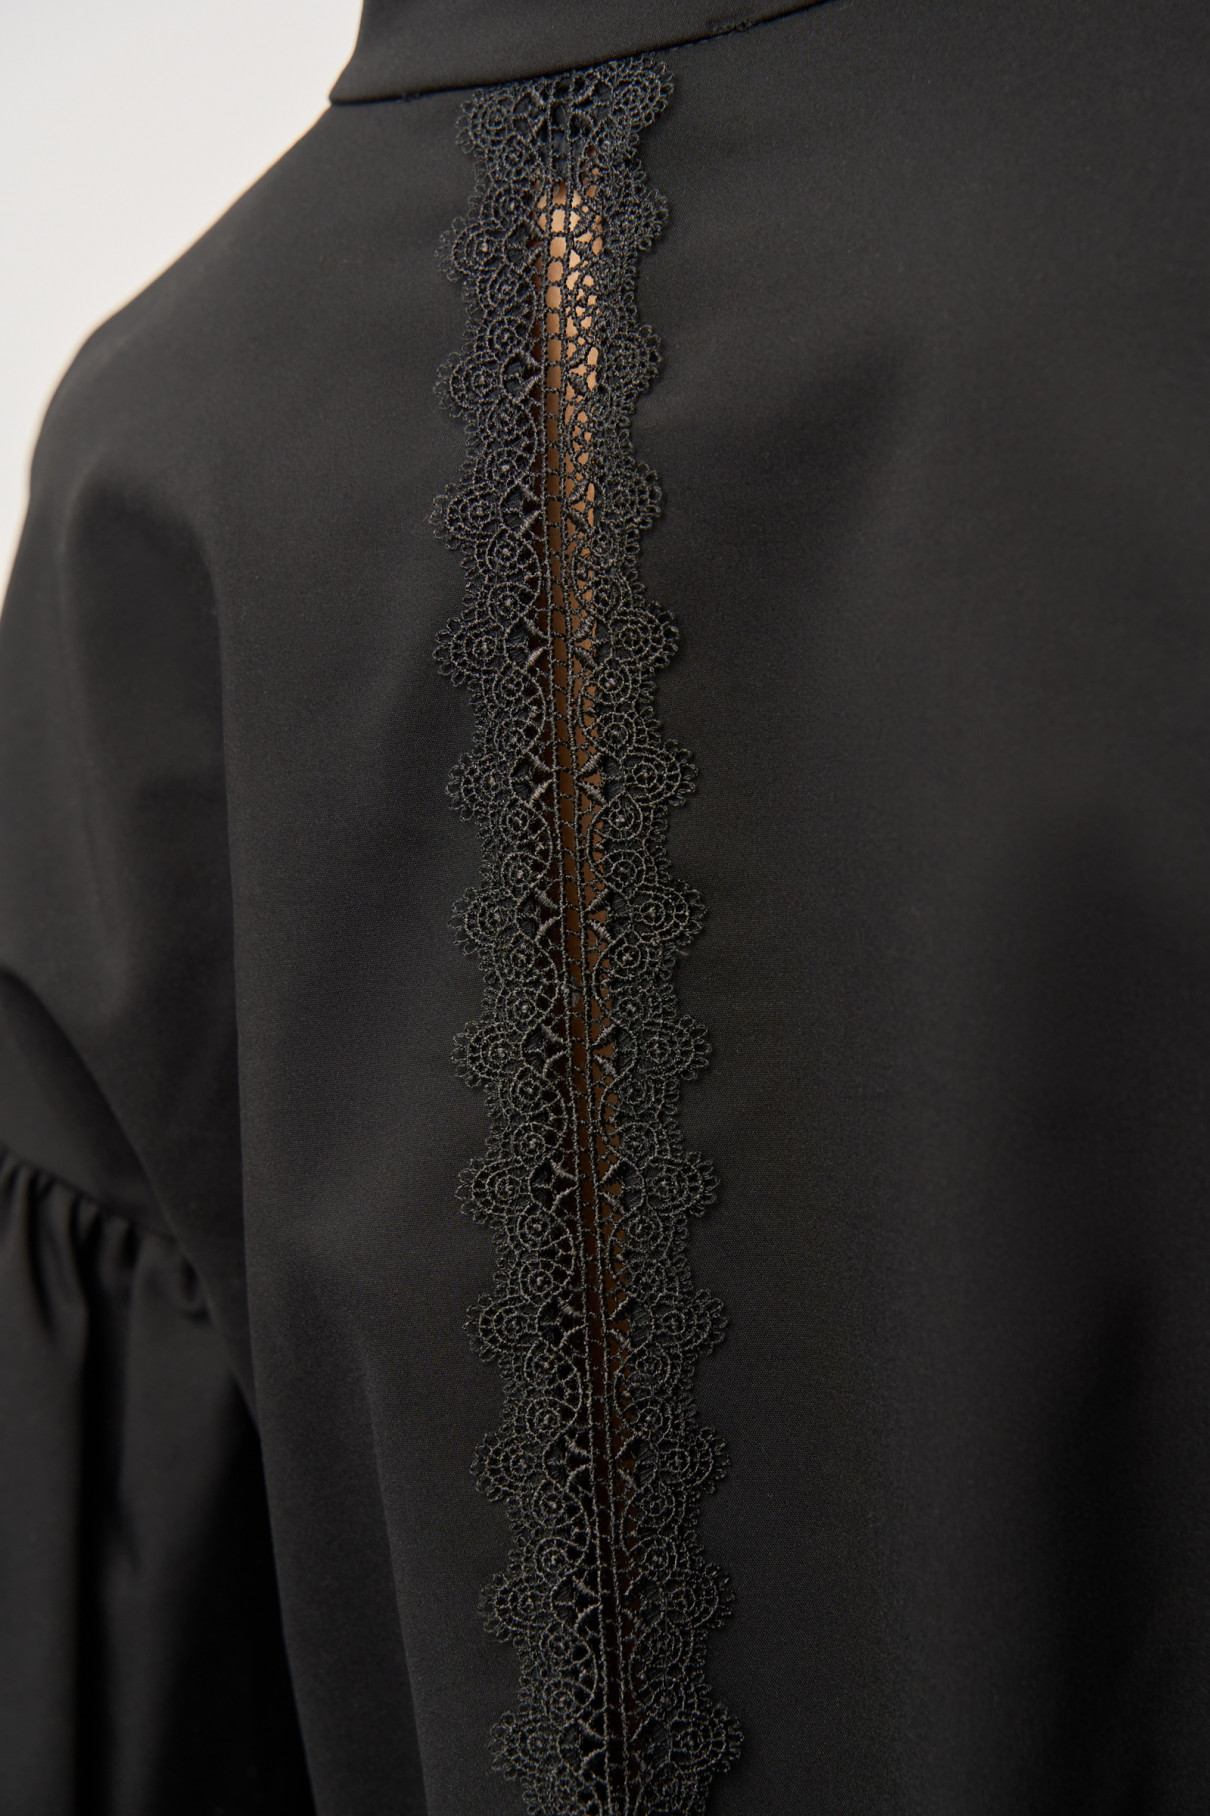 Блузка с буффами , Чёрный, арт. FR20-ГБ-3-чр-4 купить в интернет-магазине